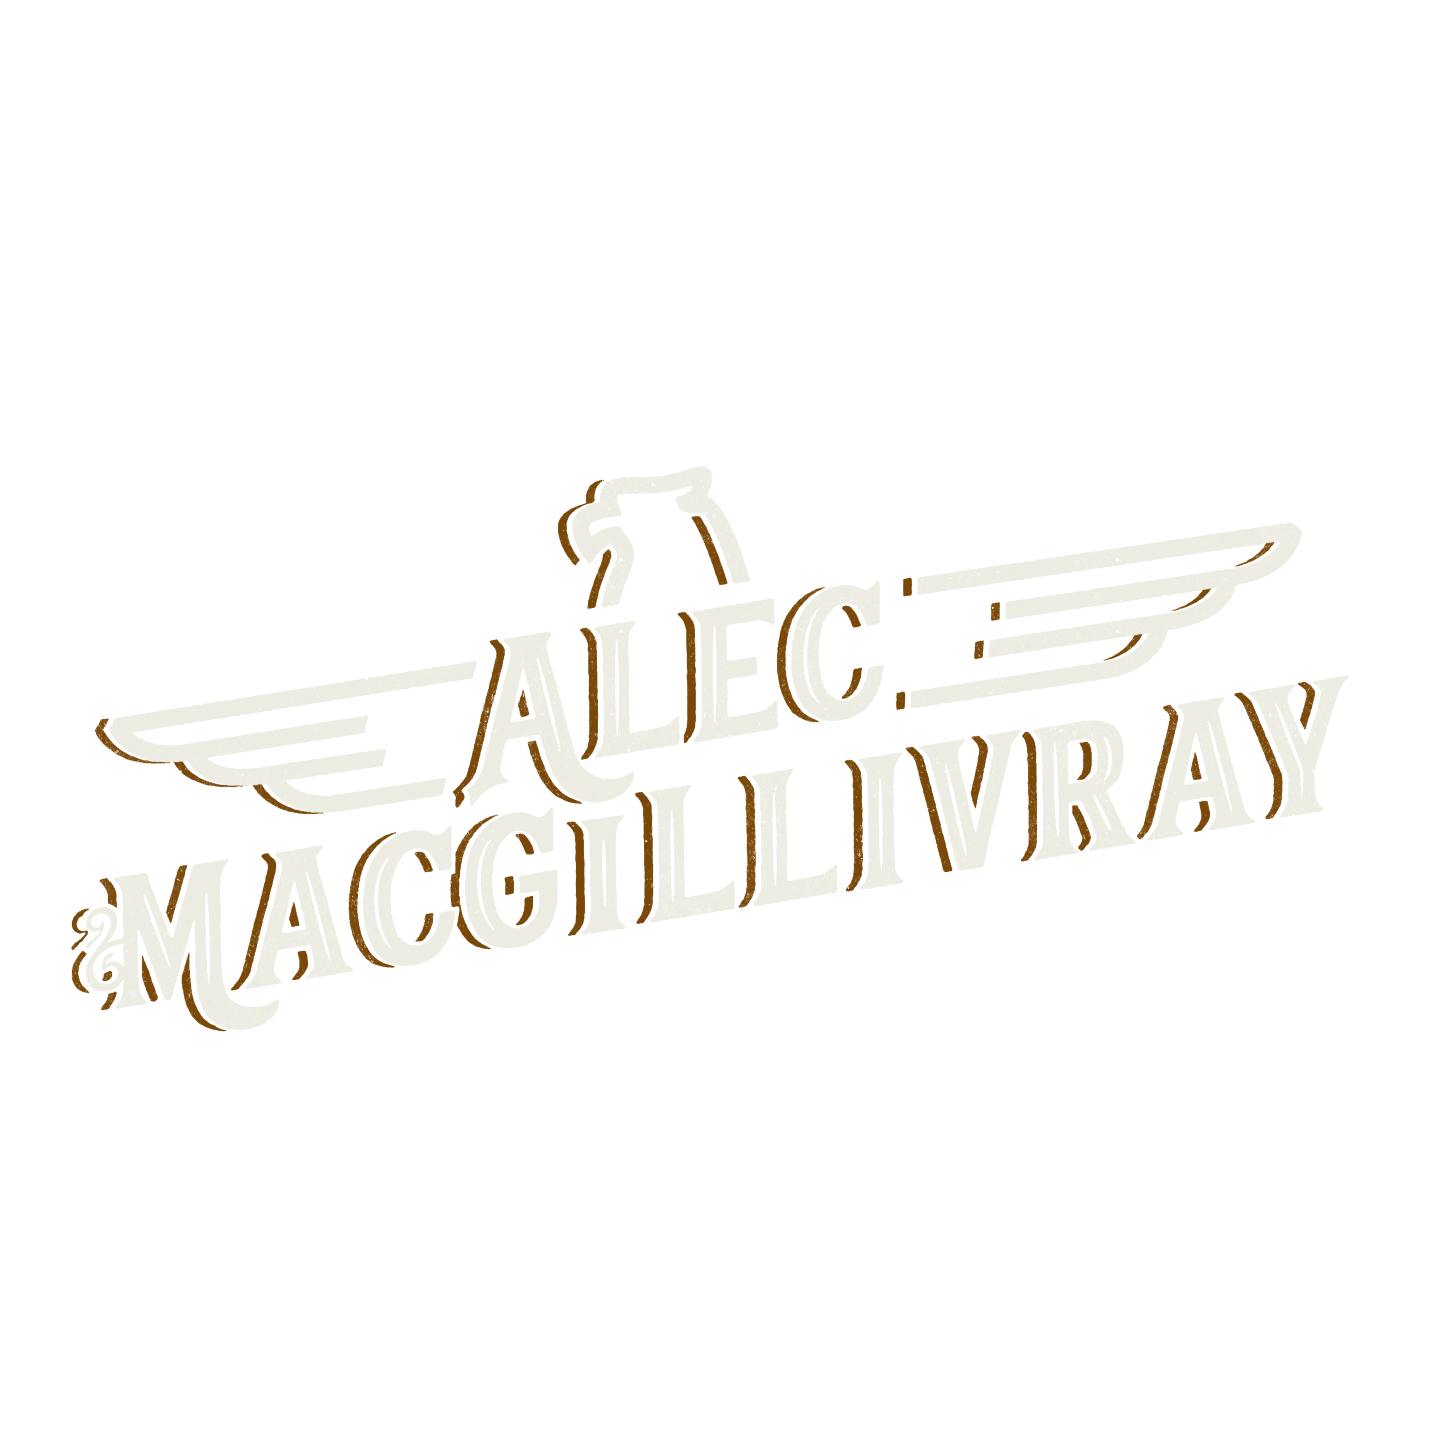 Alec MacGillivray